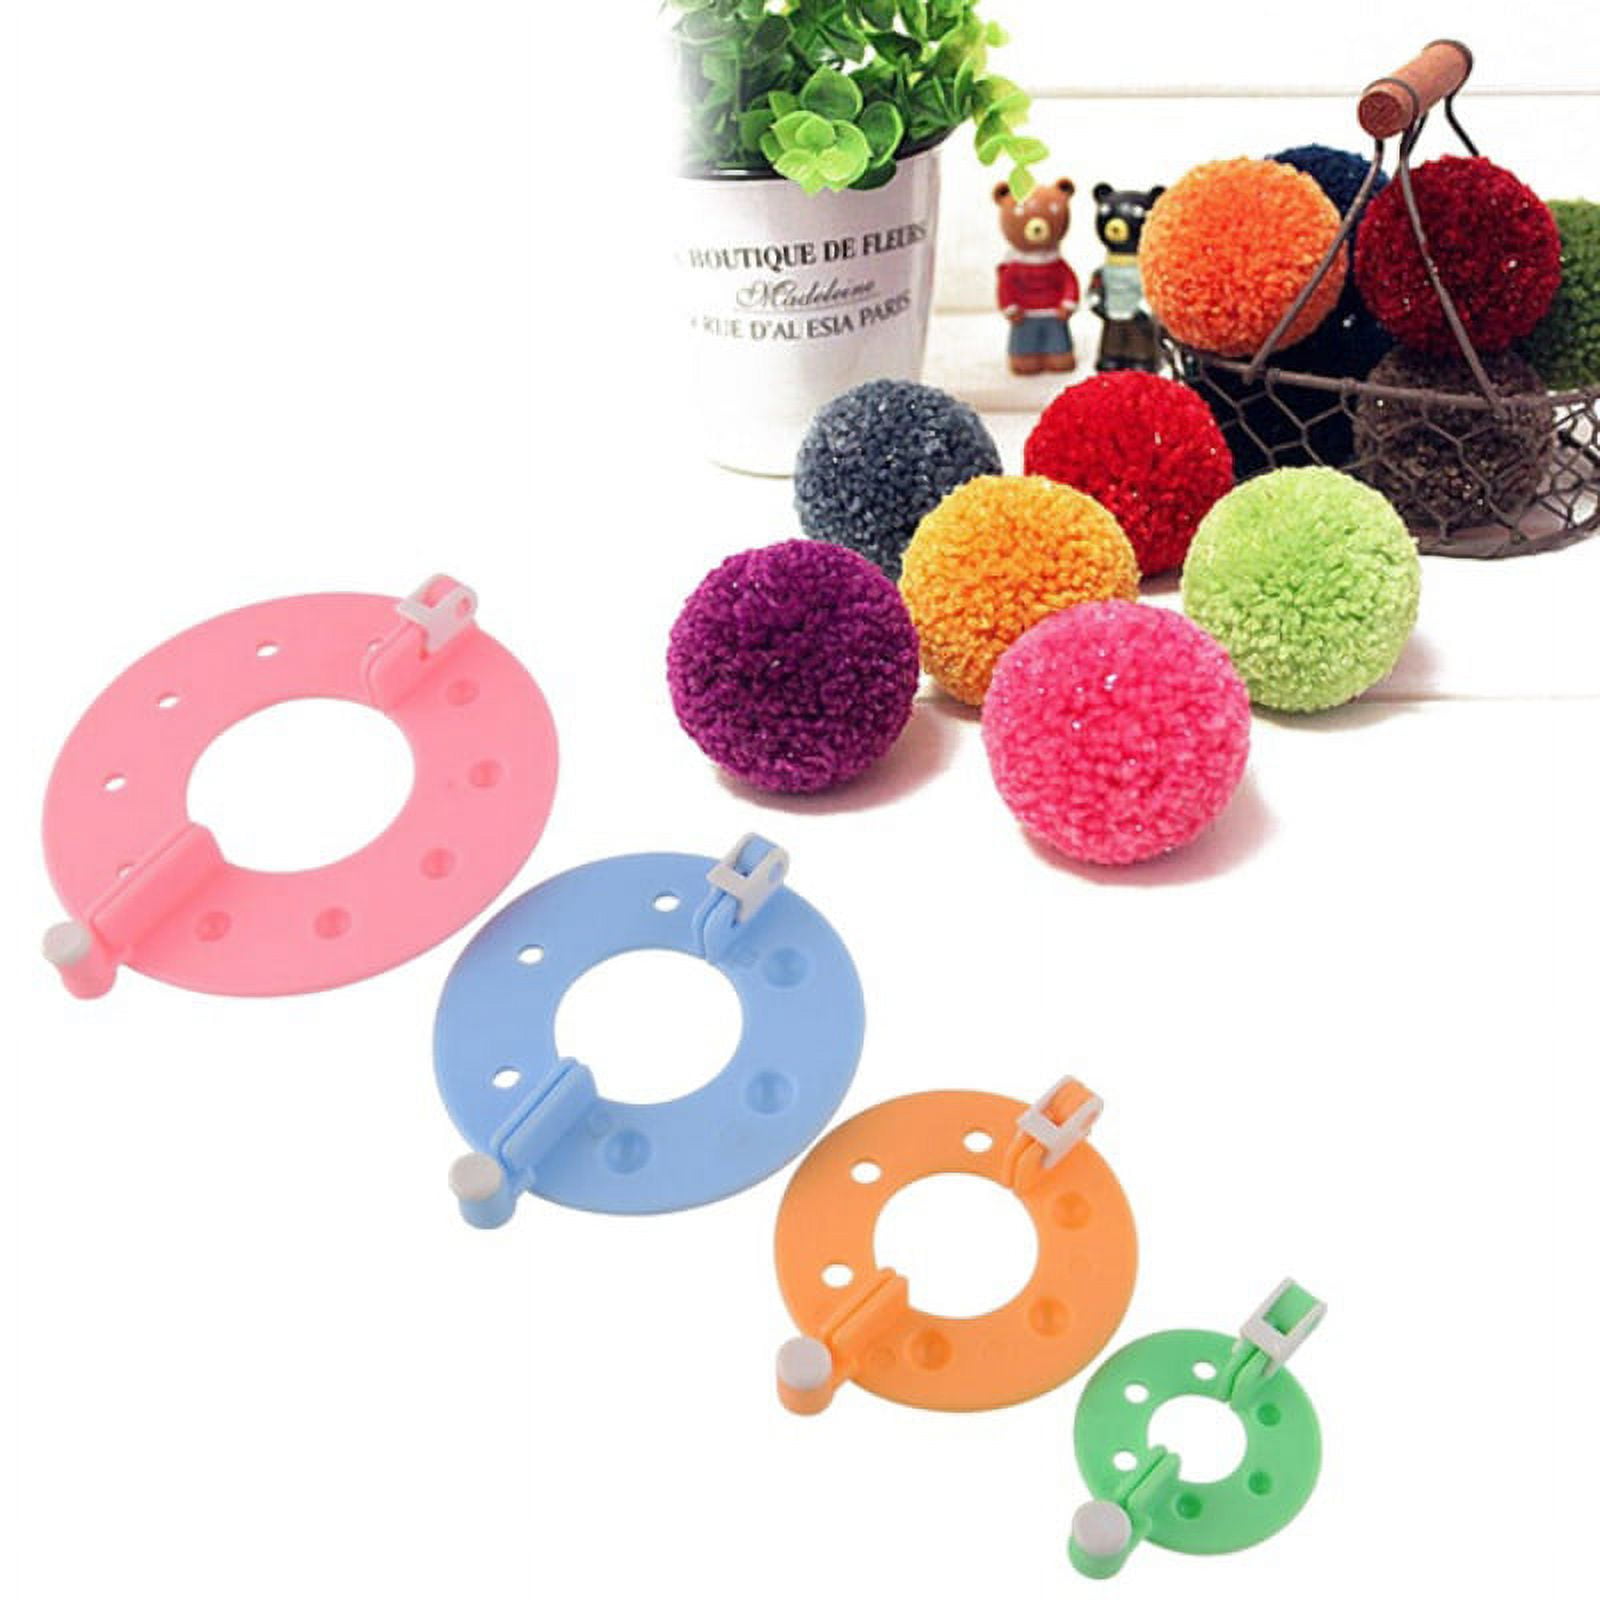 4 Pcs Pompom Maker For Crafting Fluff Ball Weaver Kit For Kids